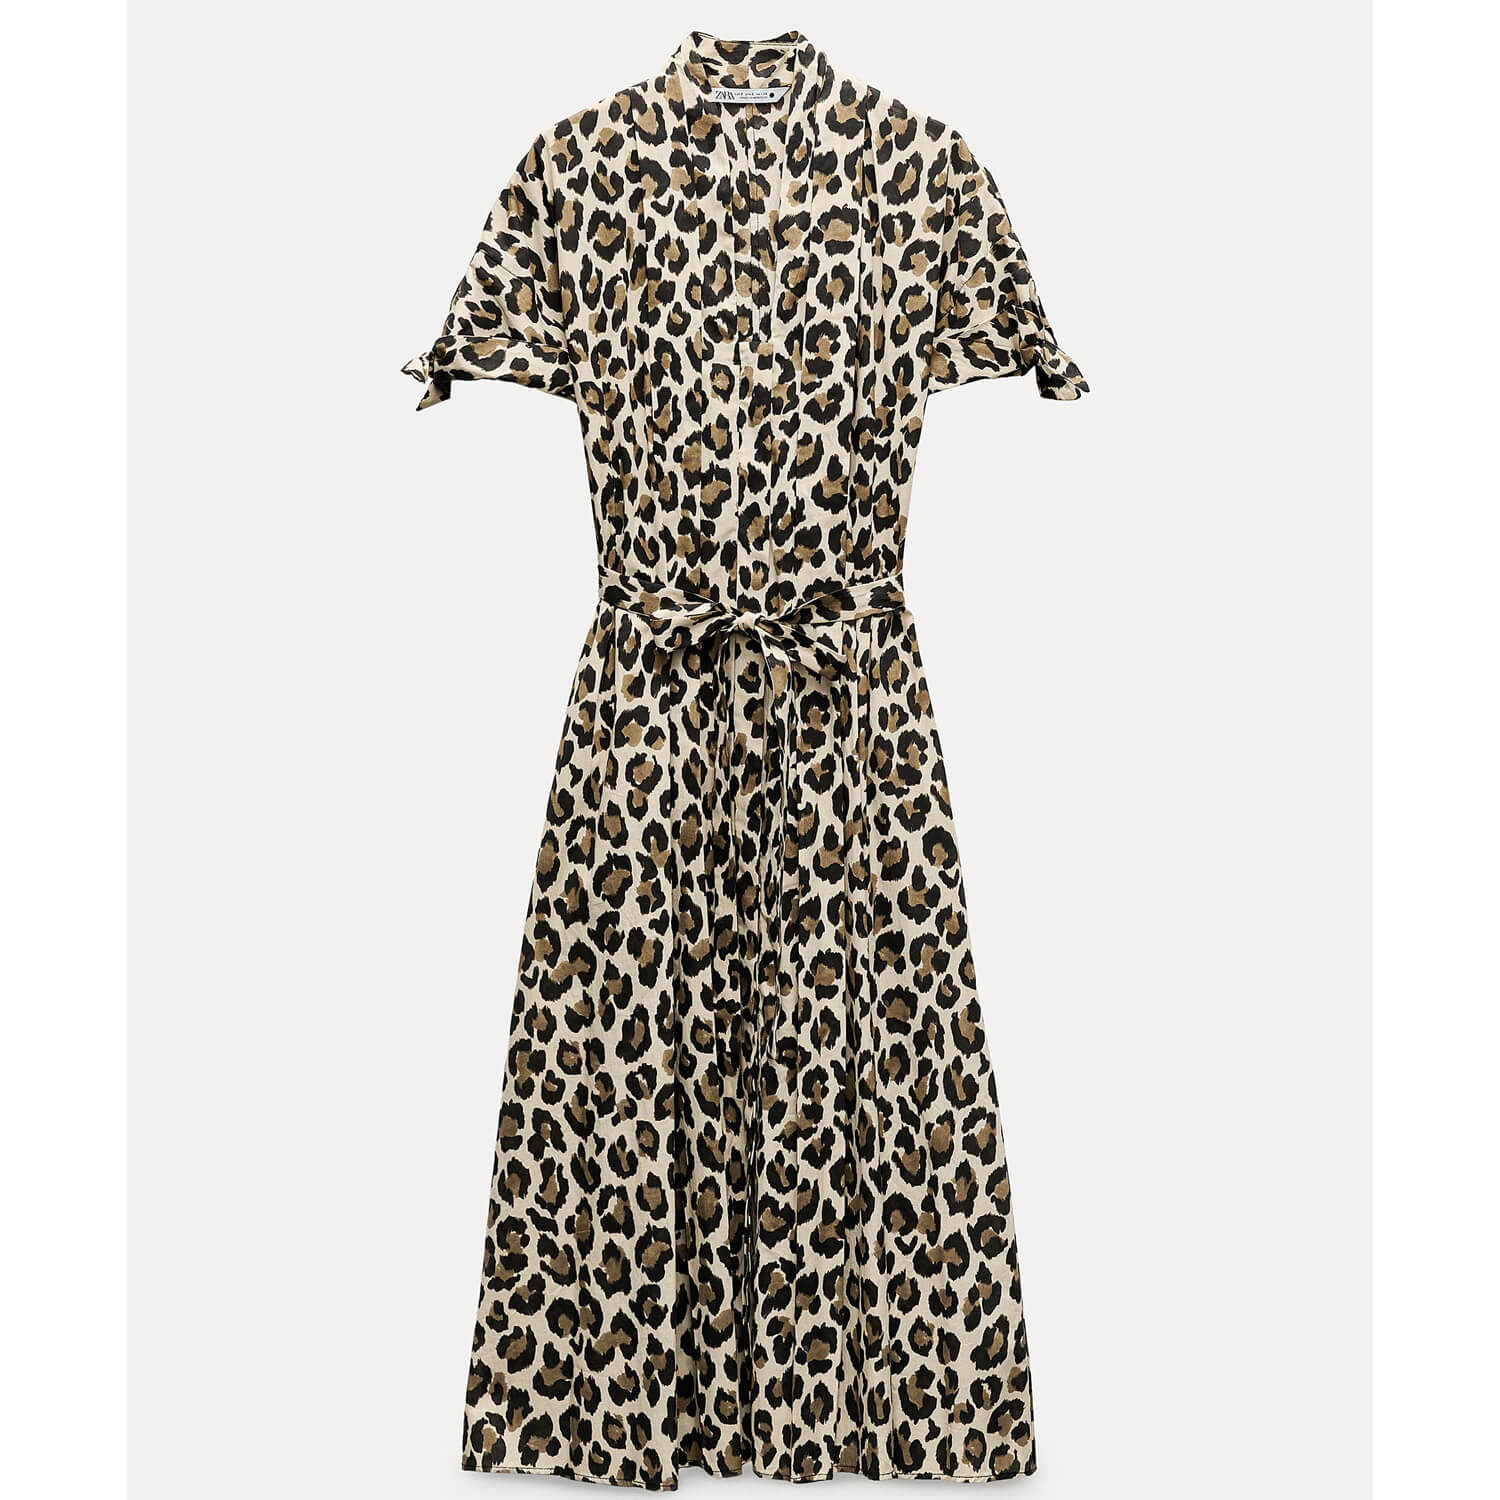 Платье-рубашка Zara ZW Collection Animal Print, коричневый